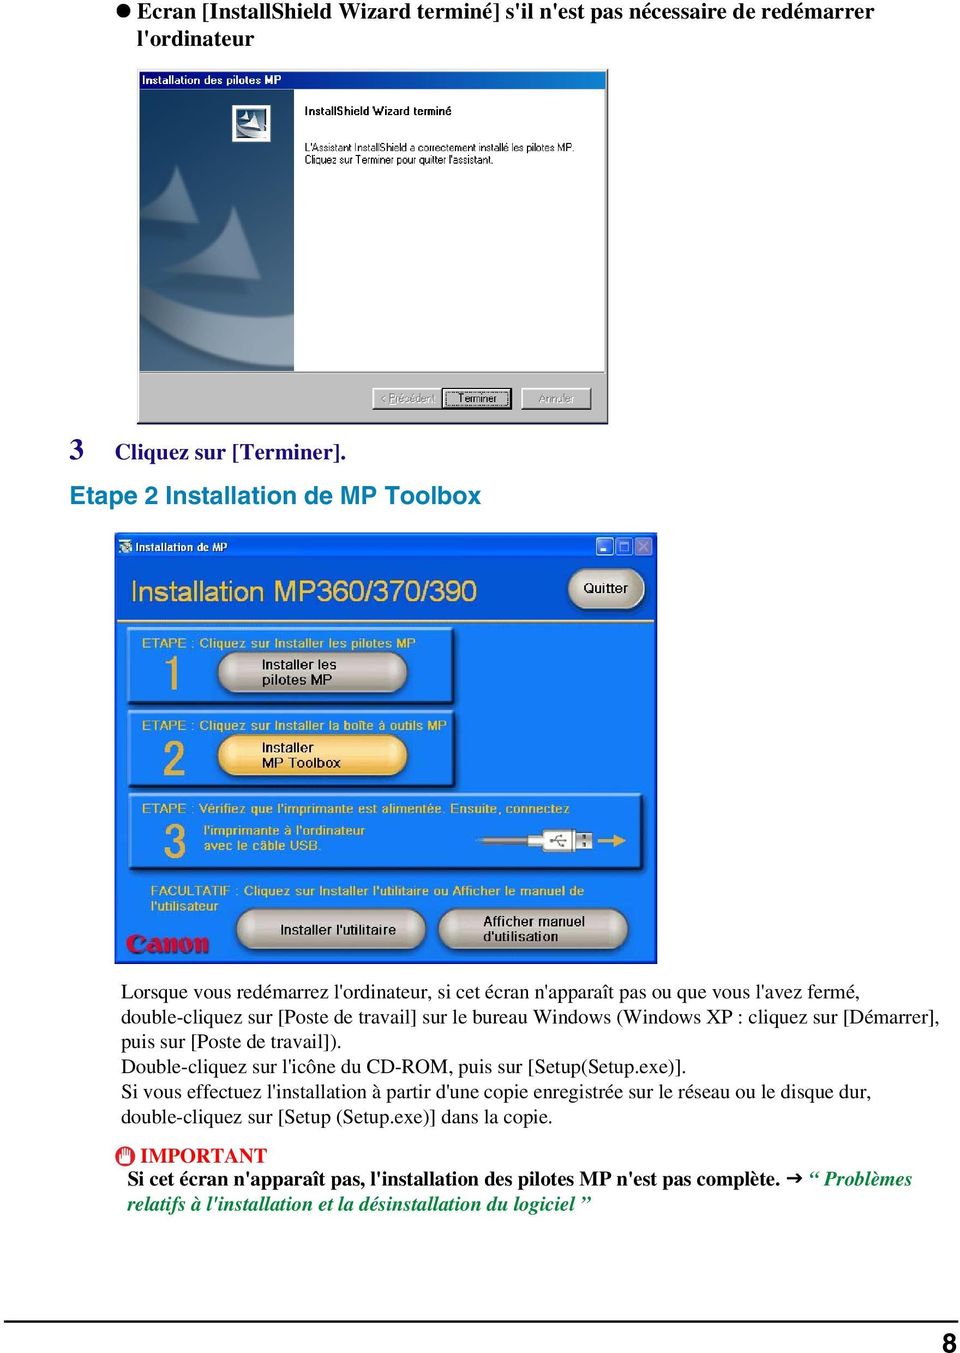 (Windows XP : cliquez sur [Démarrer], puis sur [Poste de travail]). Double-cliquez sur l'icône du CD-ROM, puis sur [Setup(Setup.exe)].